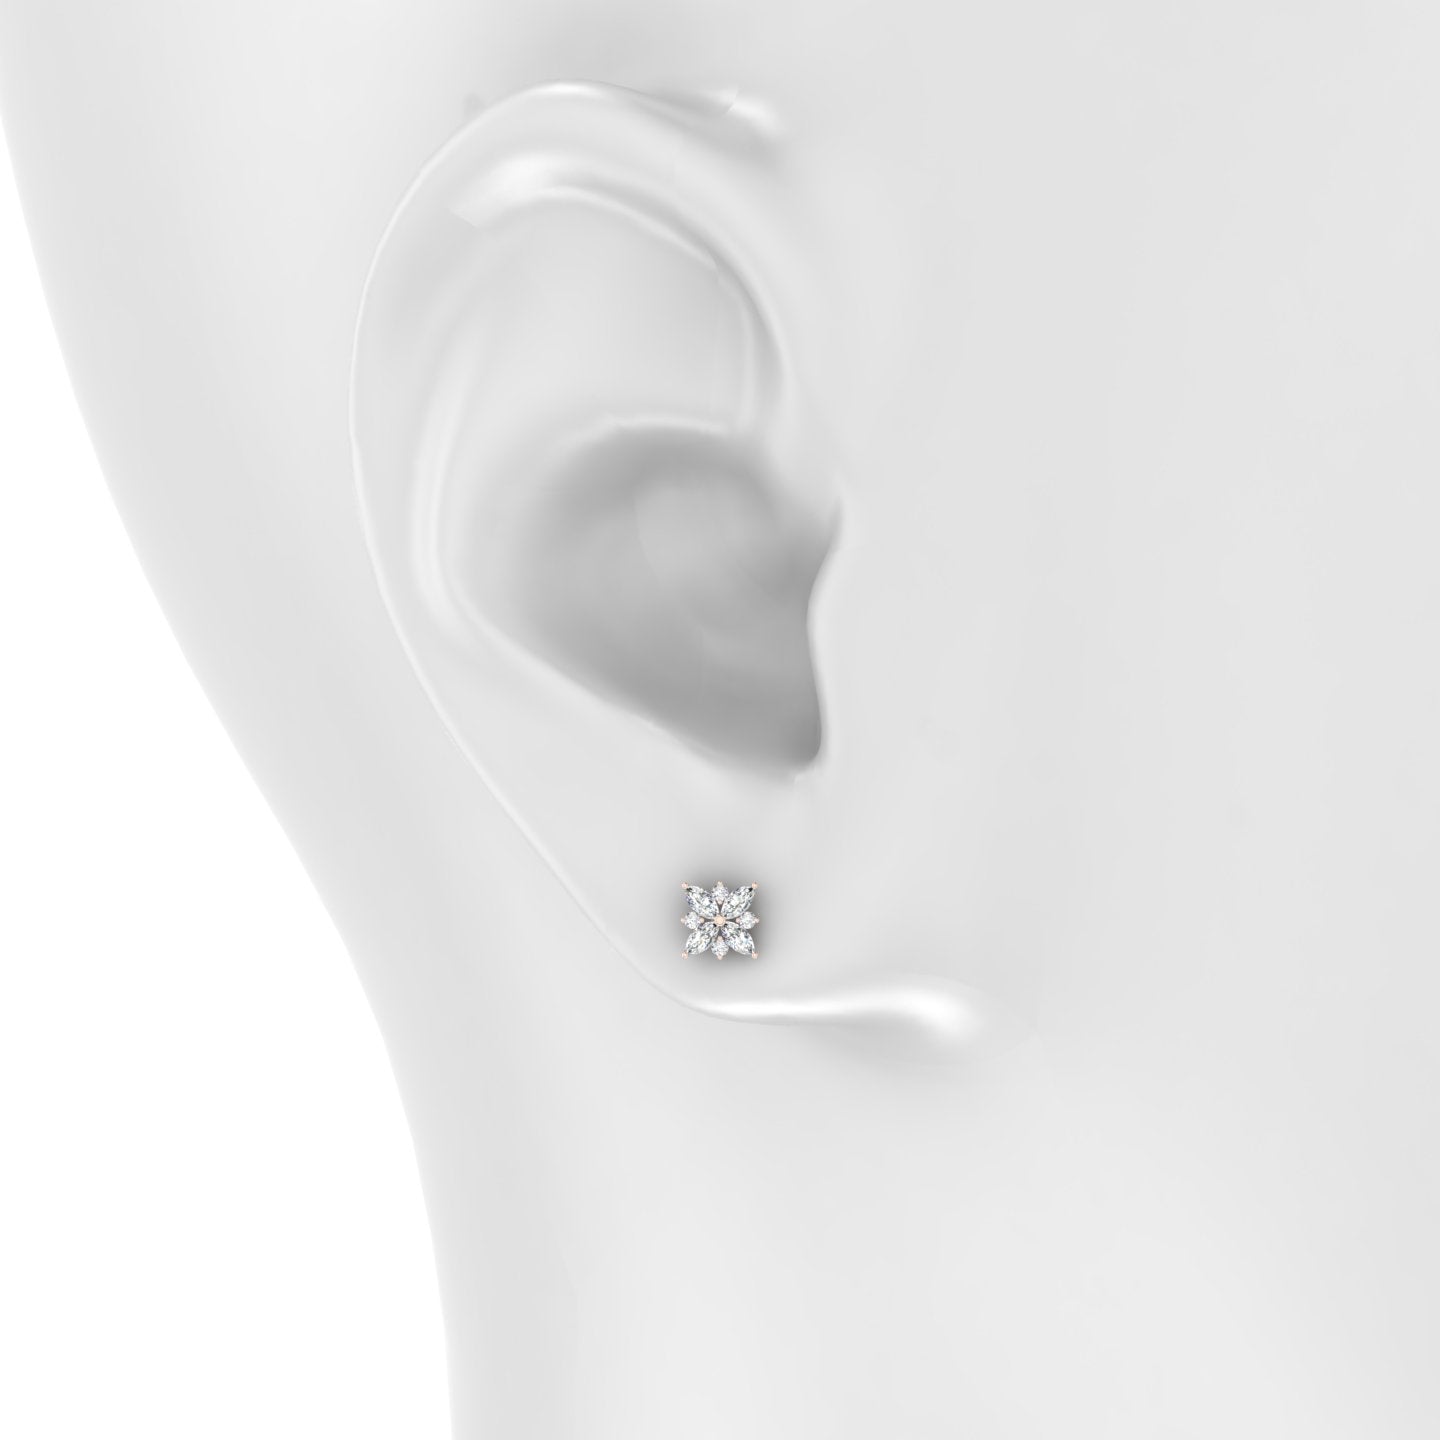 Aurore | 18k Rose Gold 5.5 mm Flower Diamond Earring